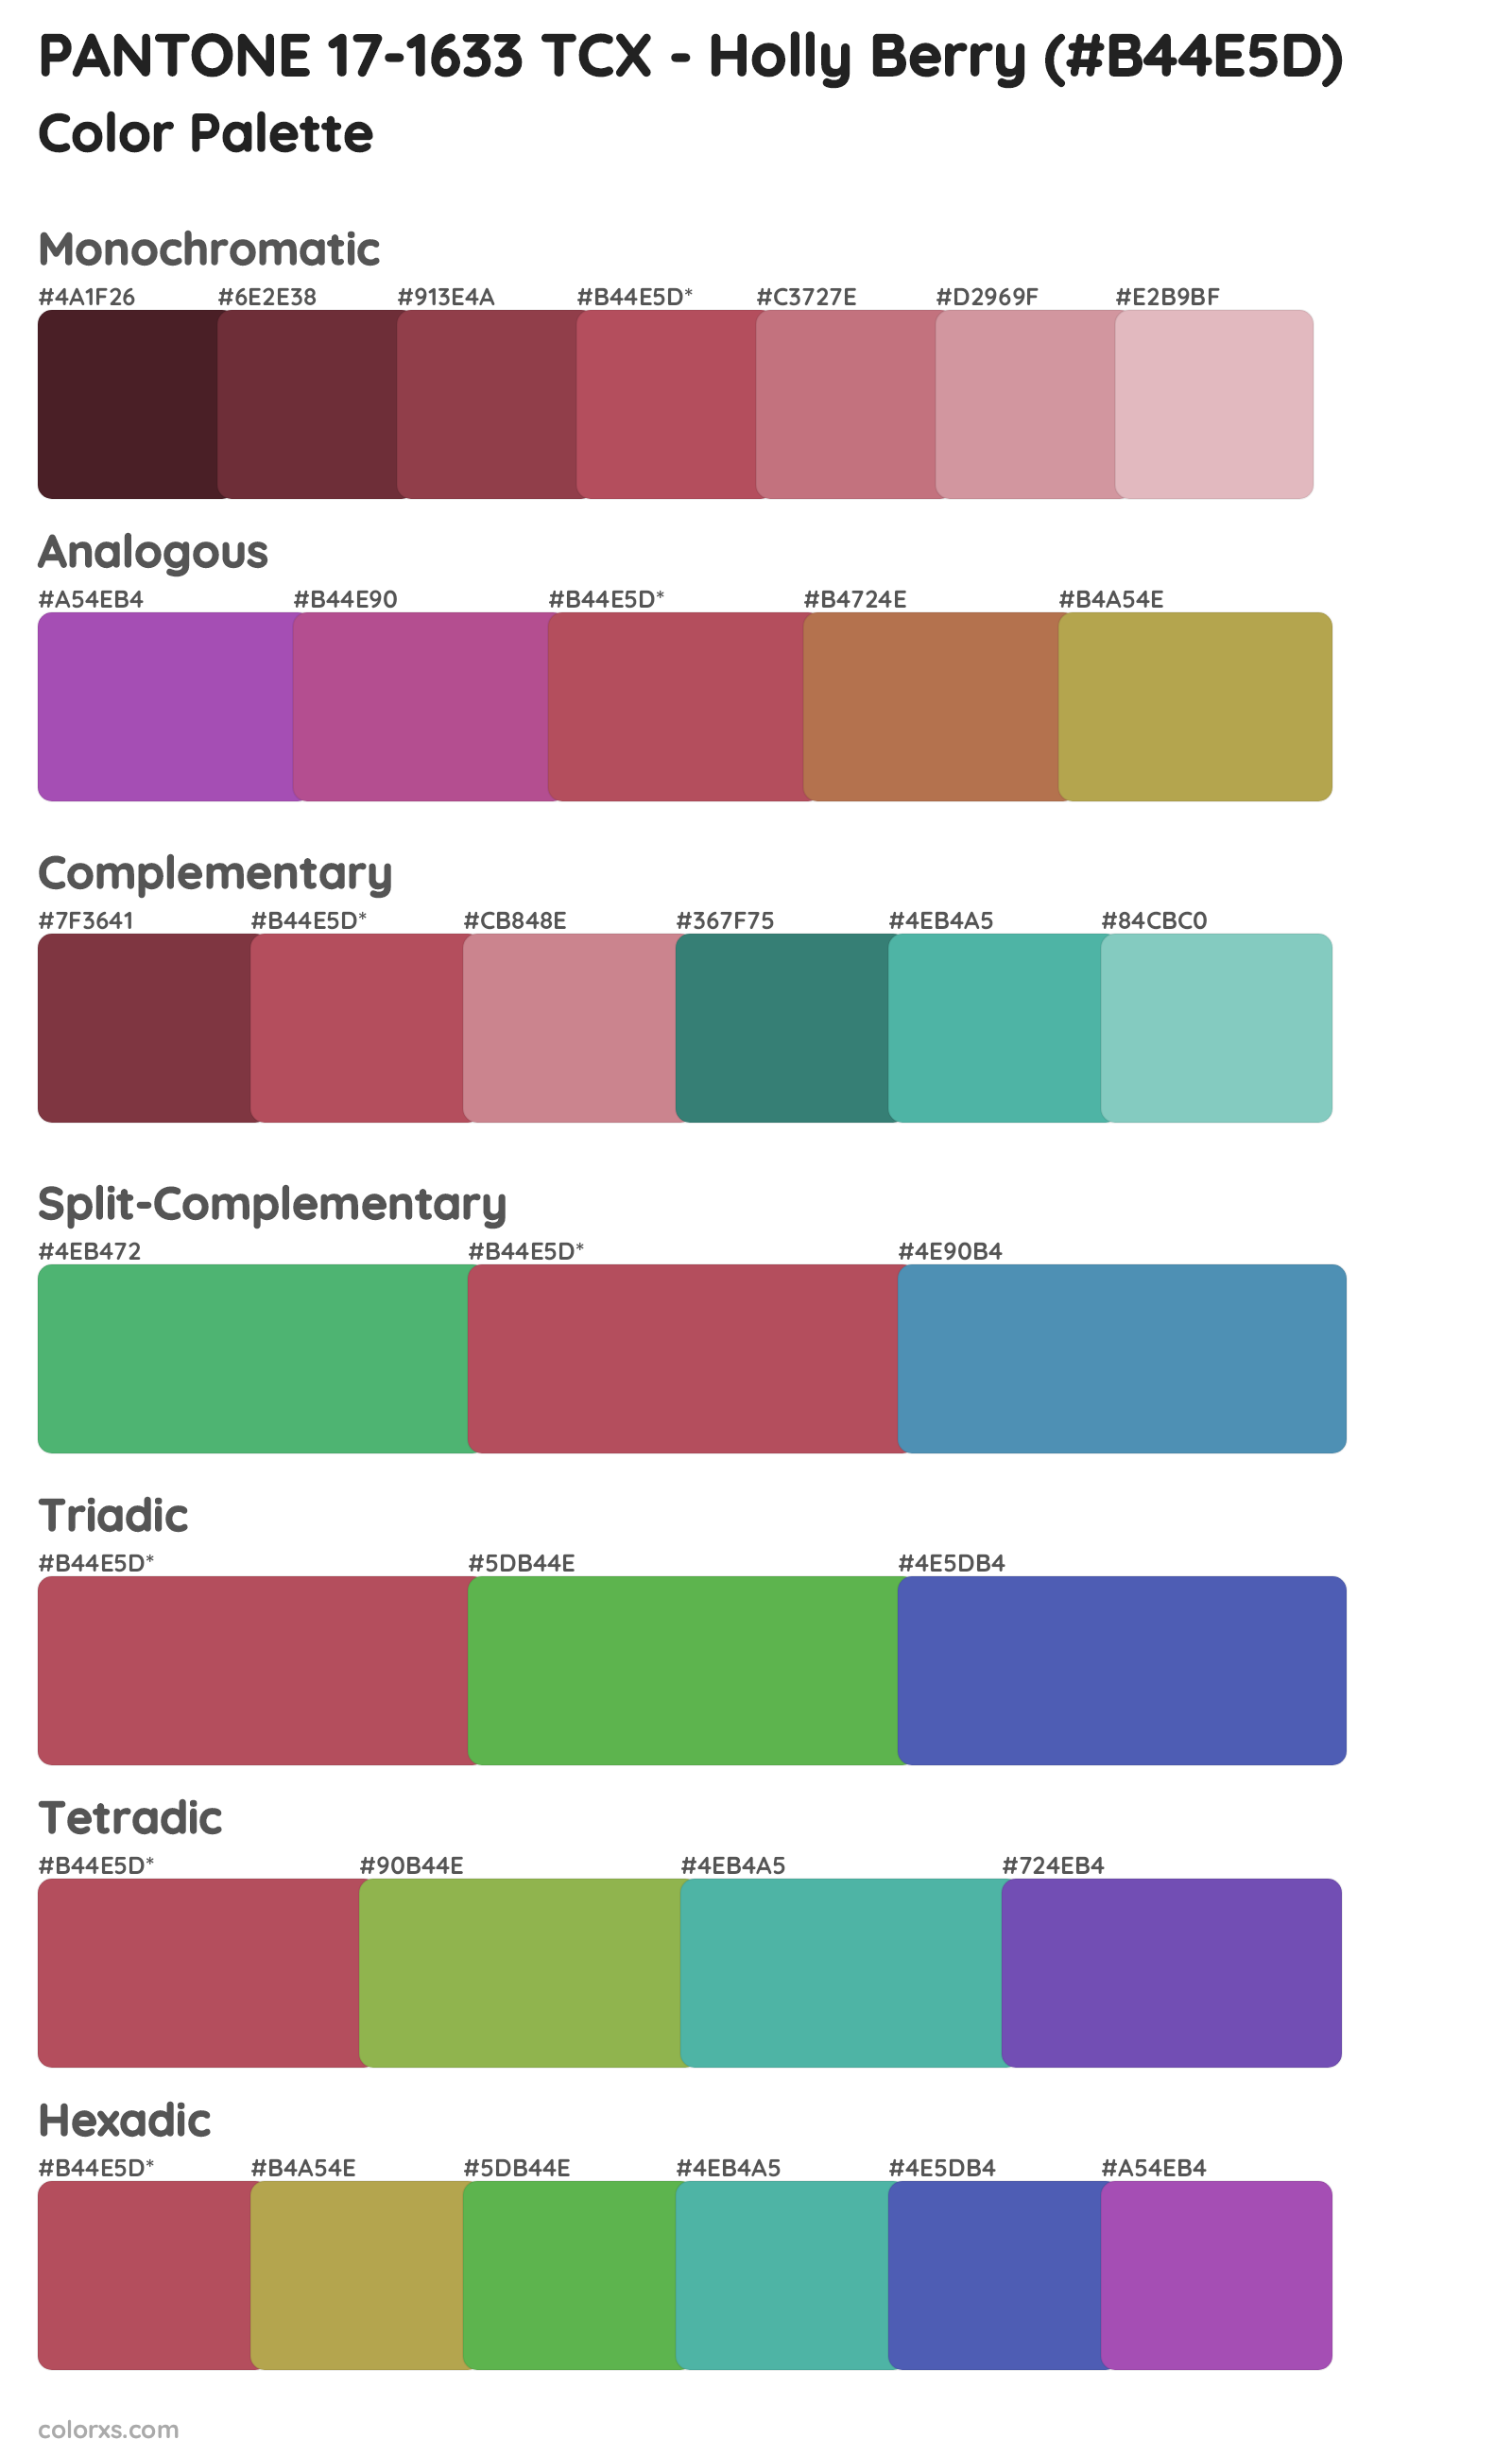 PANTONE 17-1633 TCX - Holly Berry Color Scheme Palettes